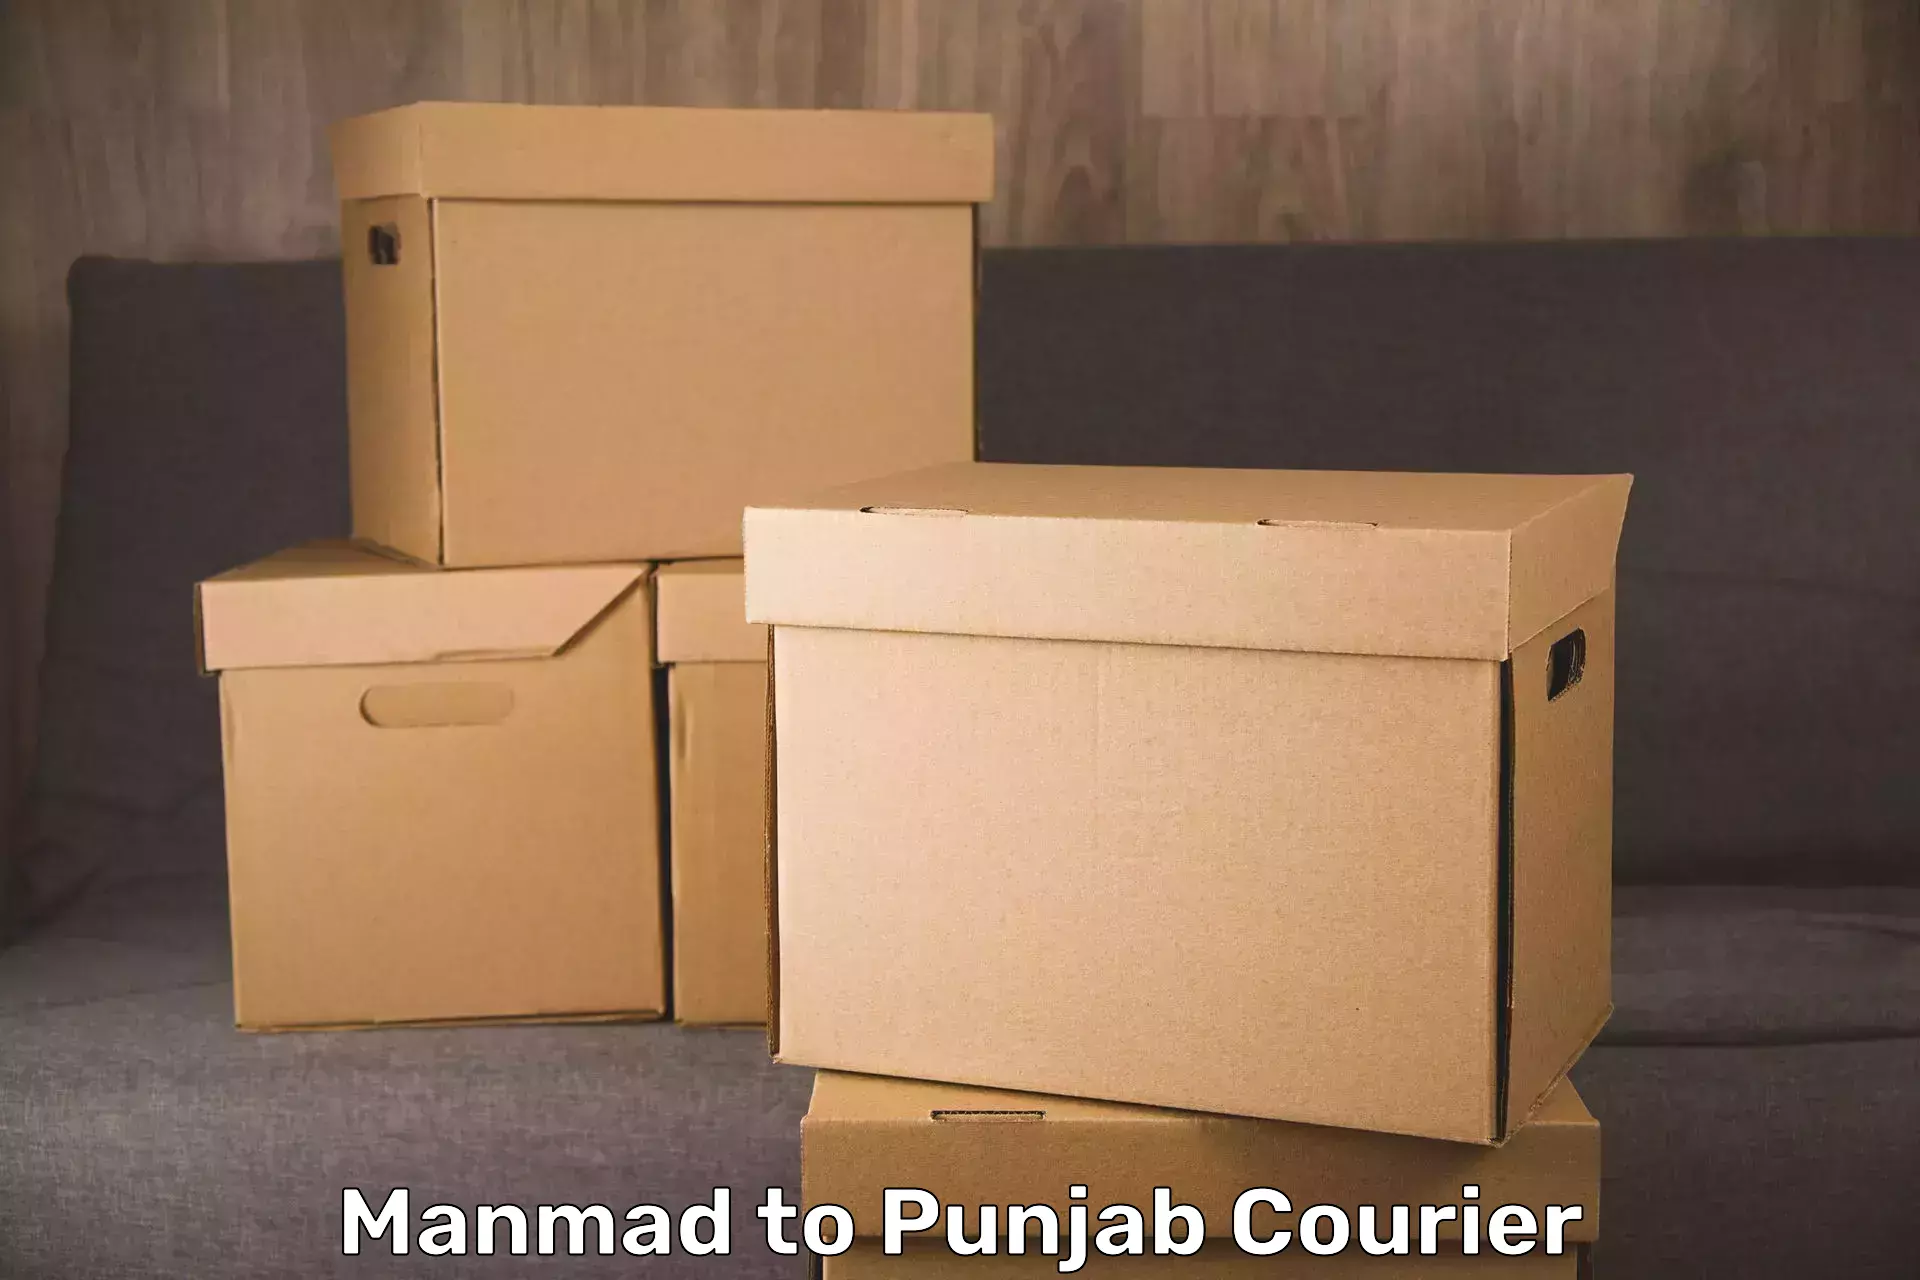 Baggage transport innovation Manmad to Punjab